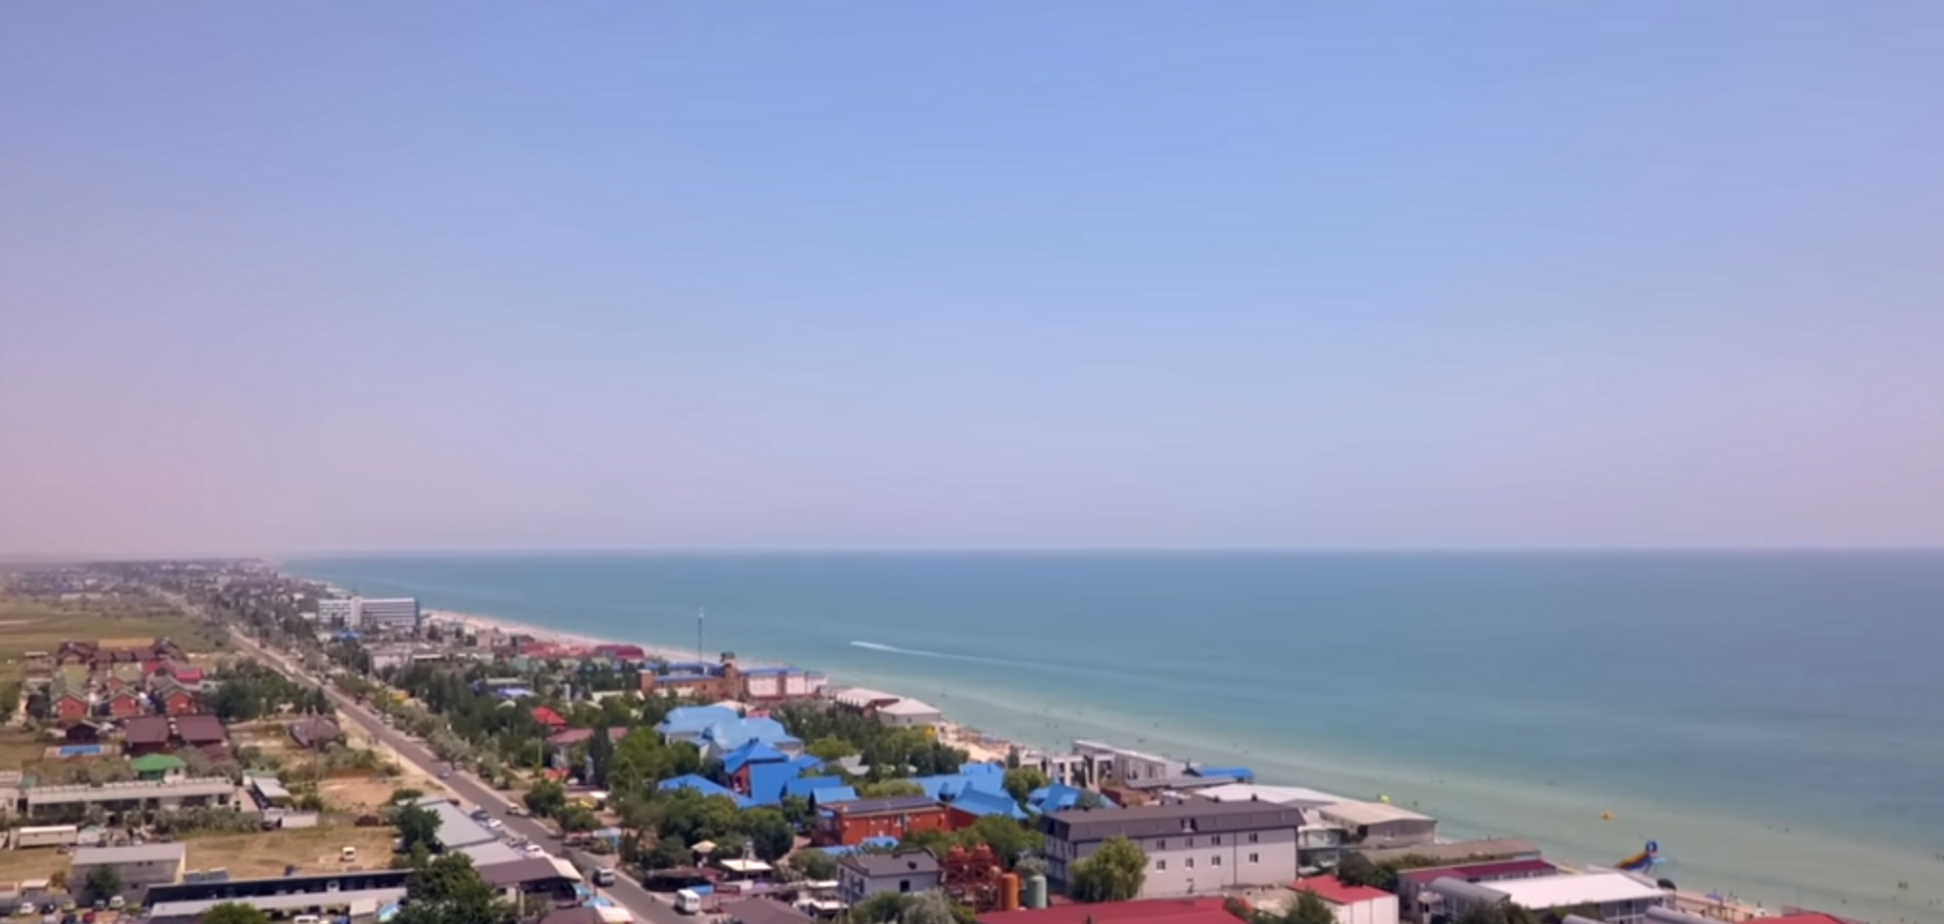 Політ над курортом Азовського моря: опубліковано відео